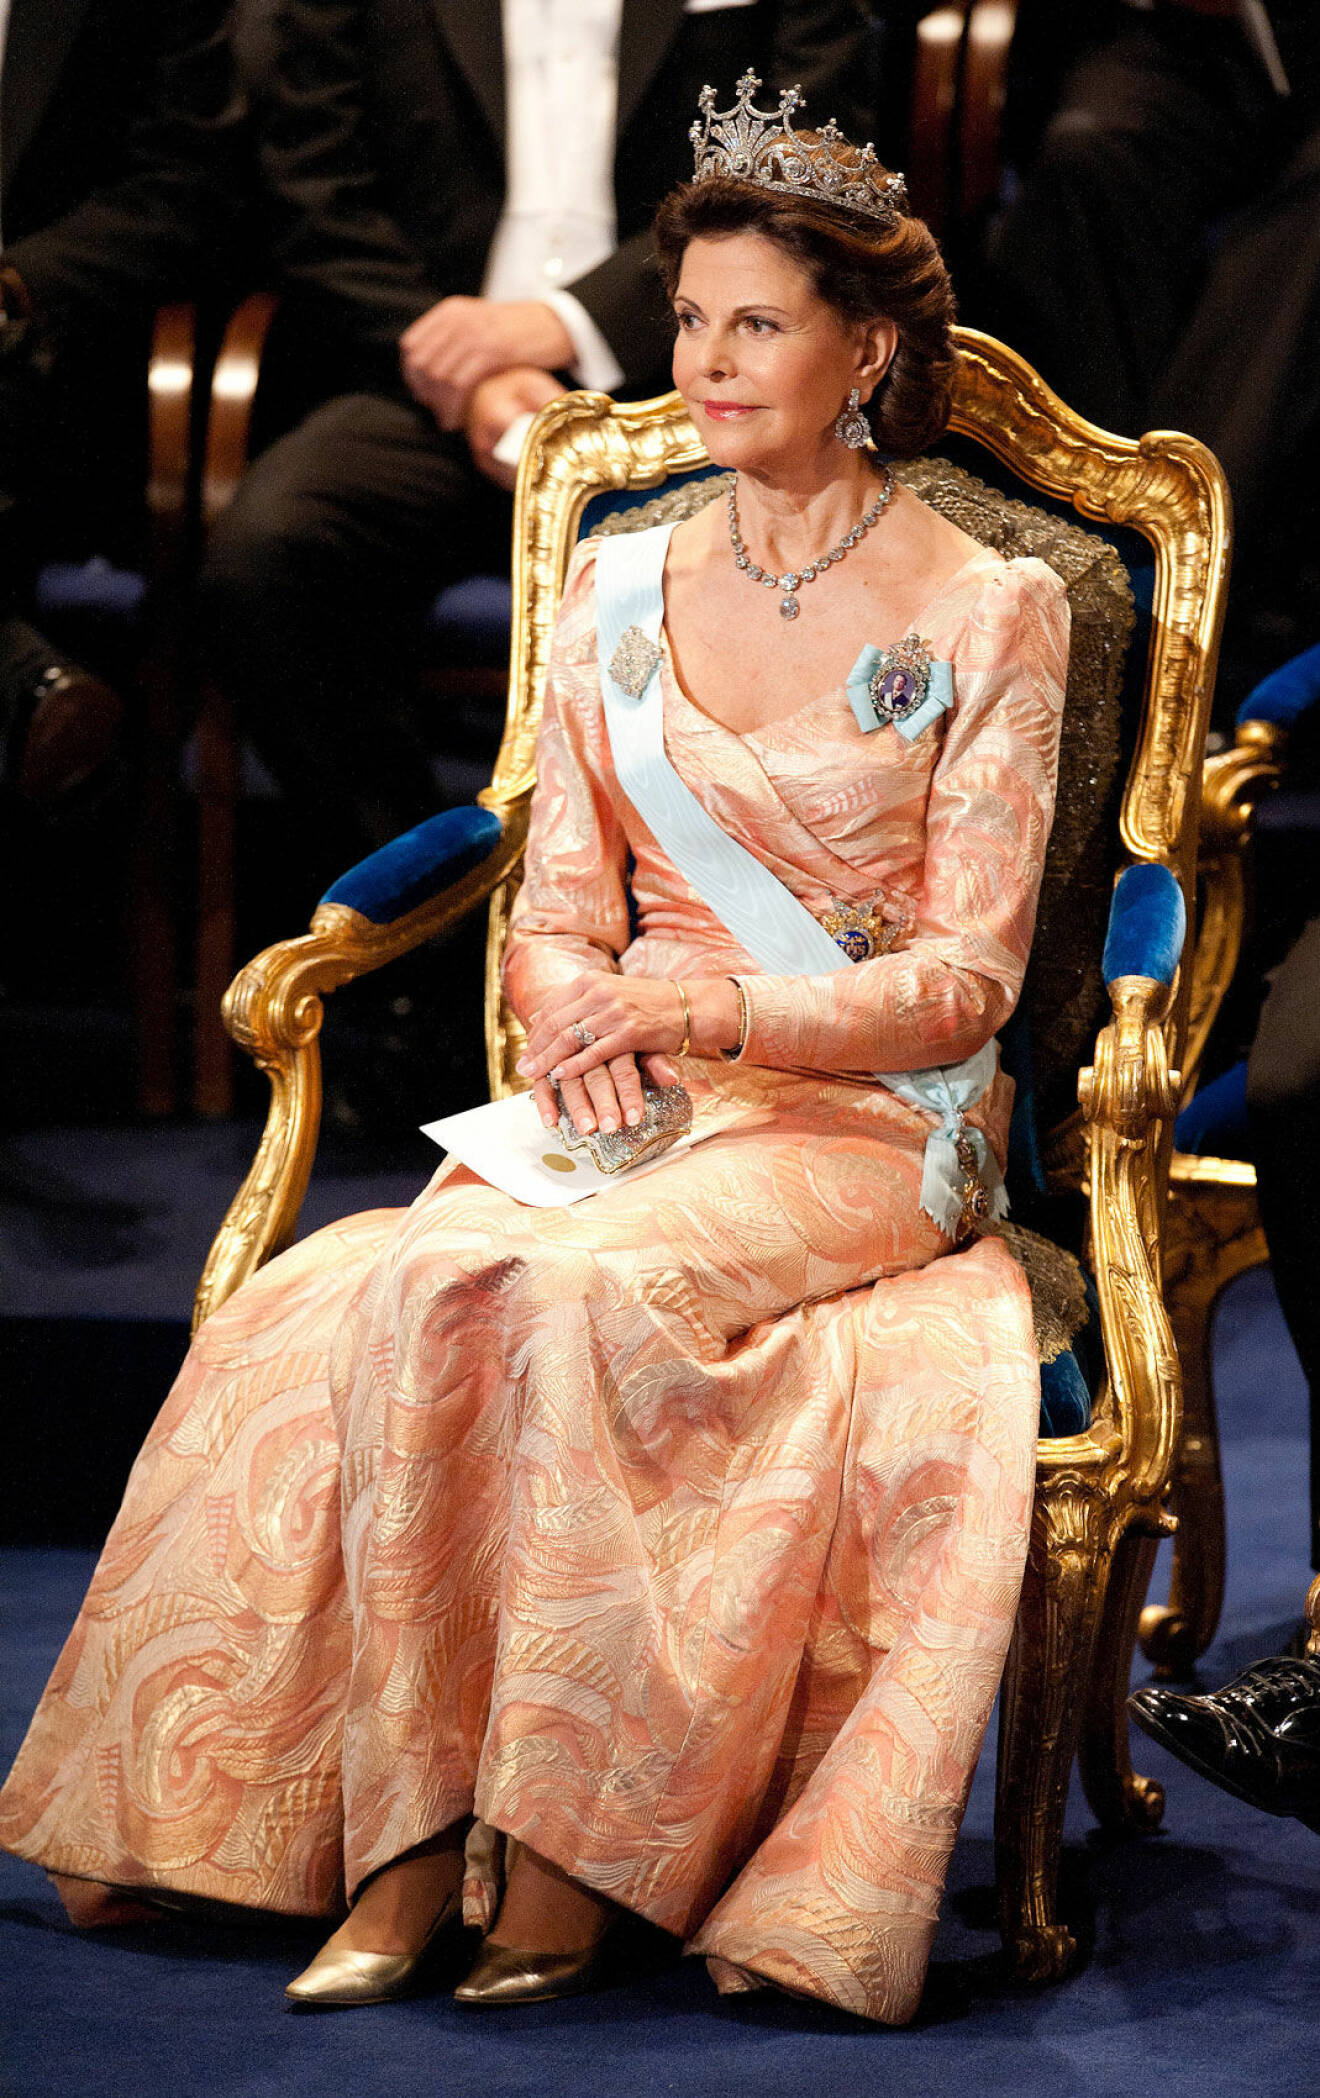 2011 återanvände drottningen den klänning som hon bar vid galaföreställningen i konserthuset kvällen före kronprinsessans bröllop 2010.